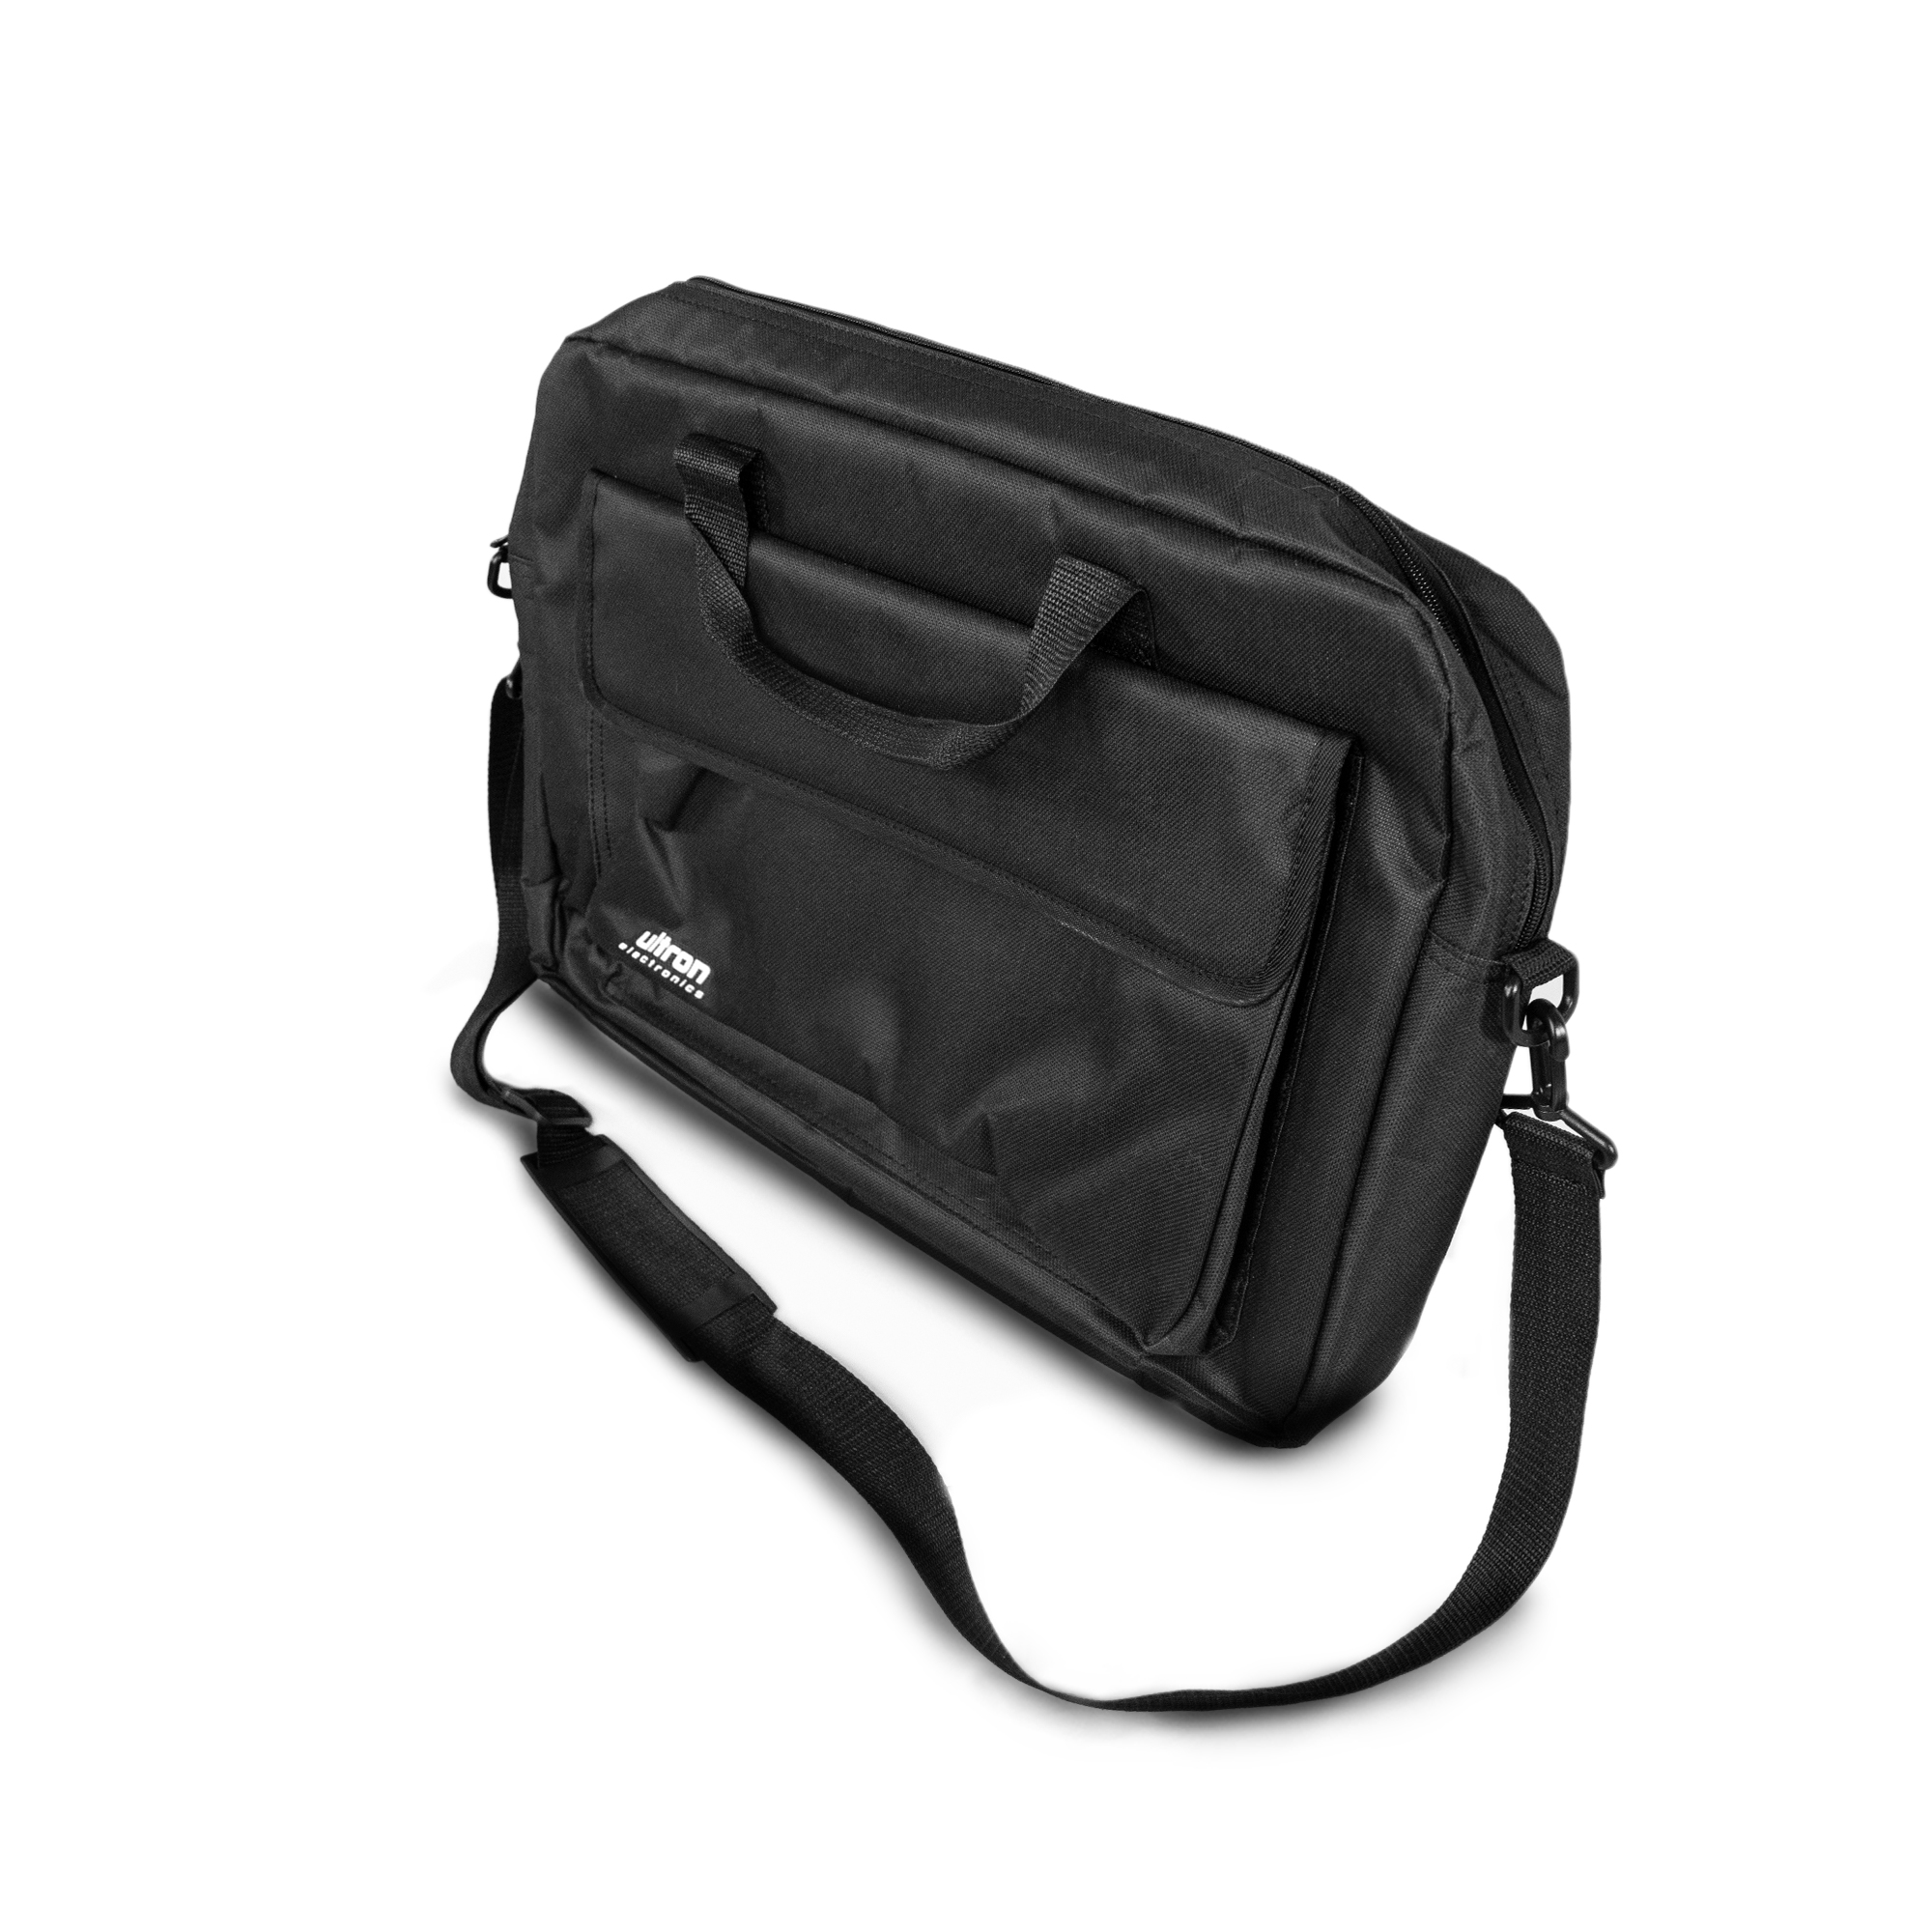 Notebook Tasche Ultron (371957) - kompakte 15,6" Laptoptasche, Umhängetasche/Tragetasche bis 15,6" (39,6cm)